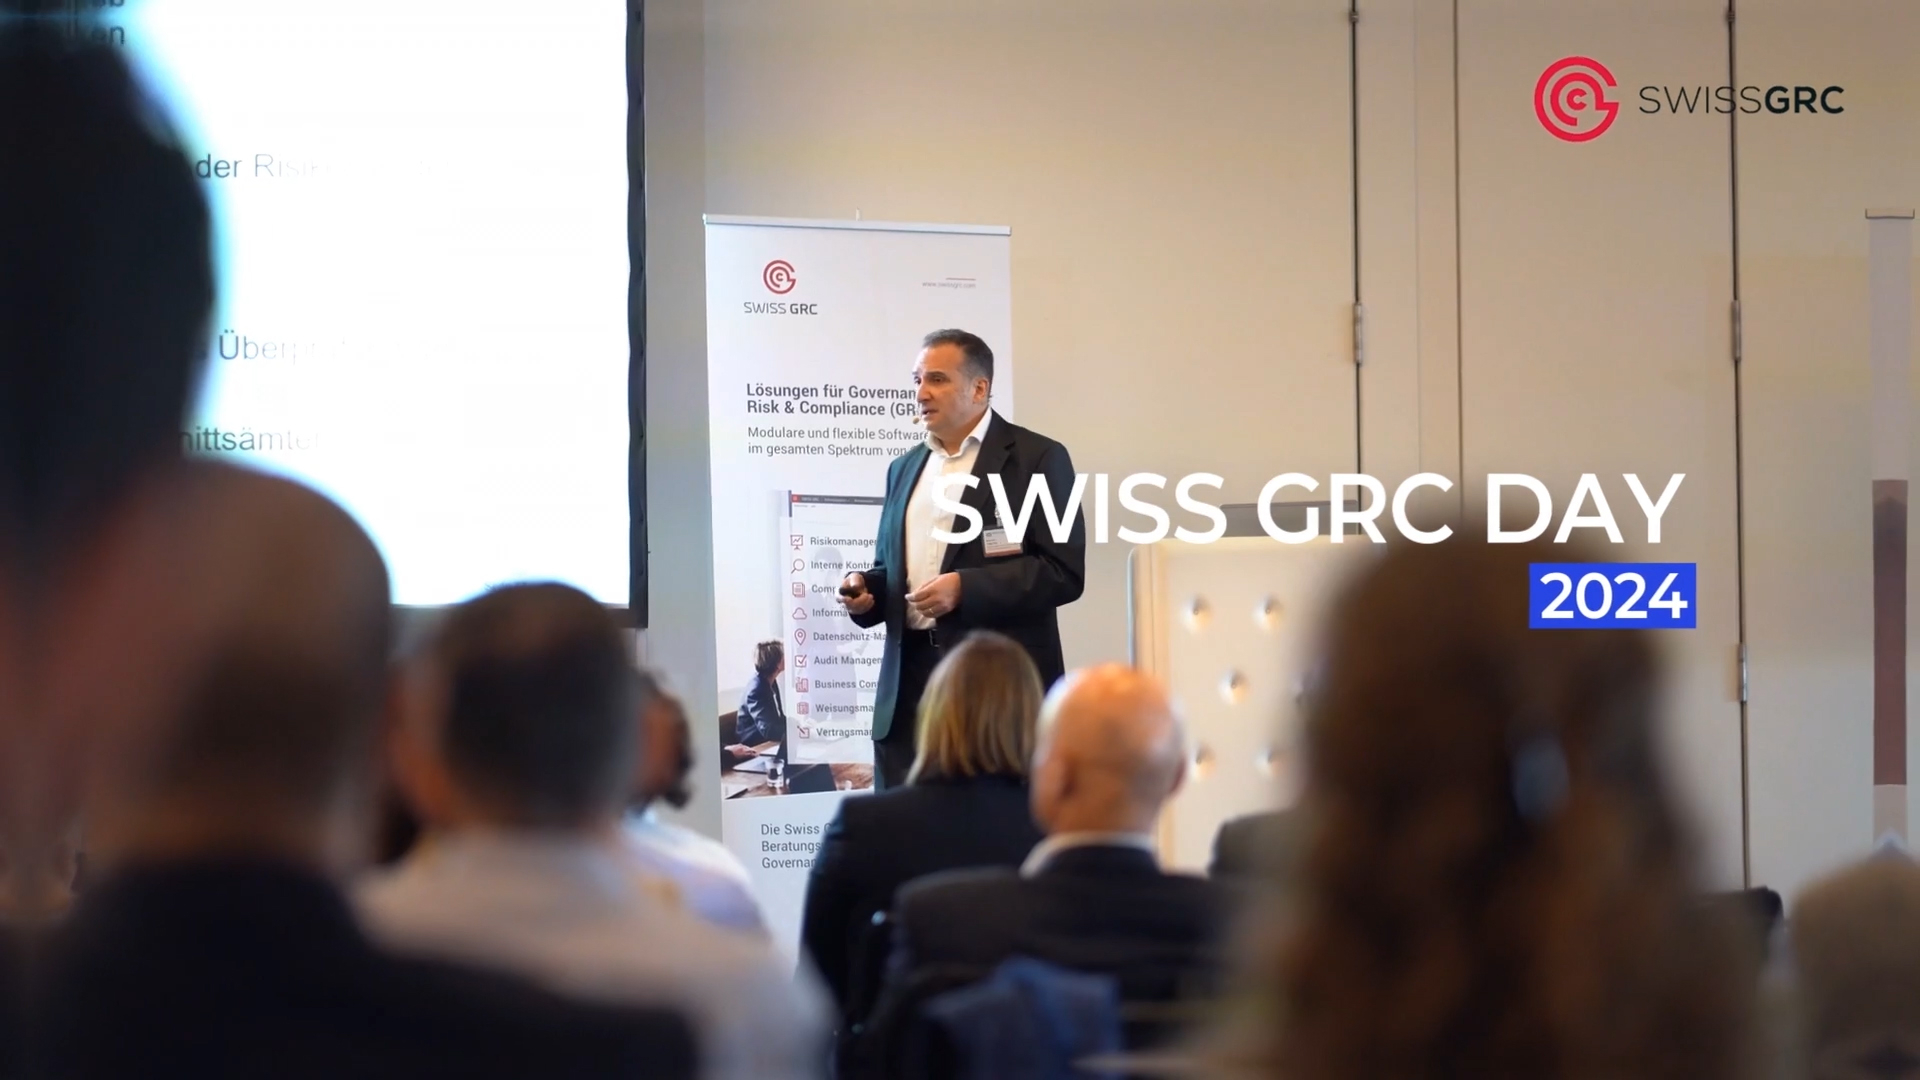 Projecteur sur les nouvelles technologies et l'intelligence artificielle au Swiss GRC Day 2024